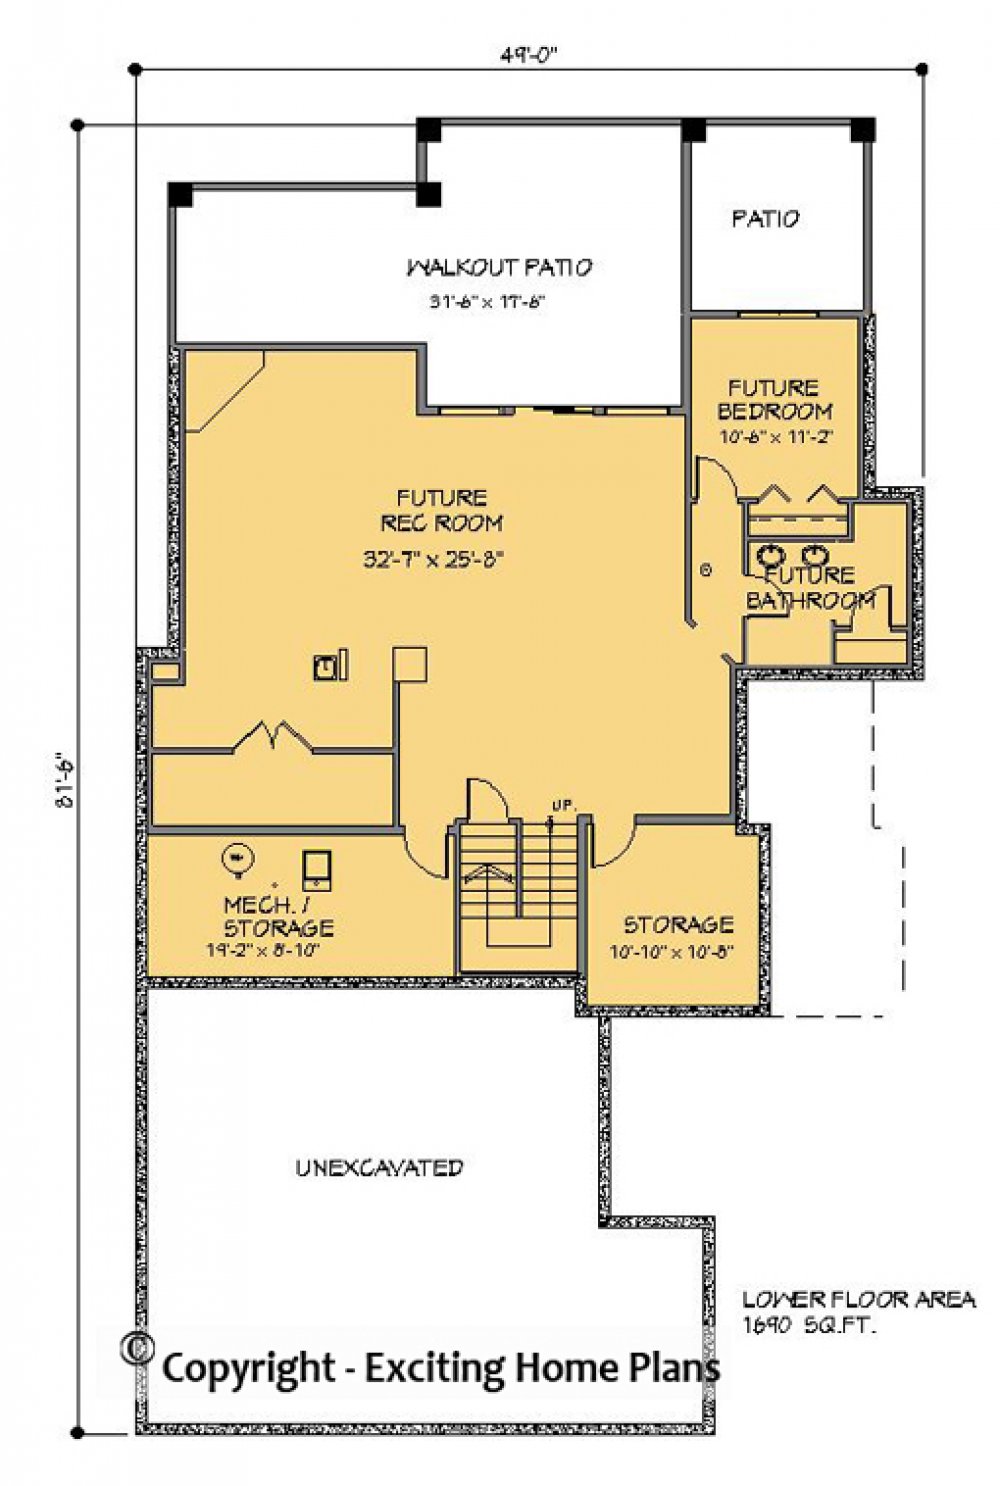 House Plan E1166-10  Lower Floor Plan